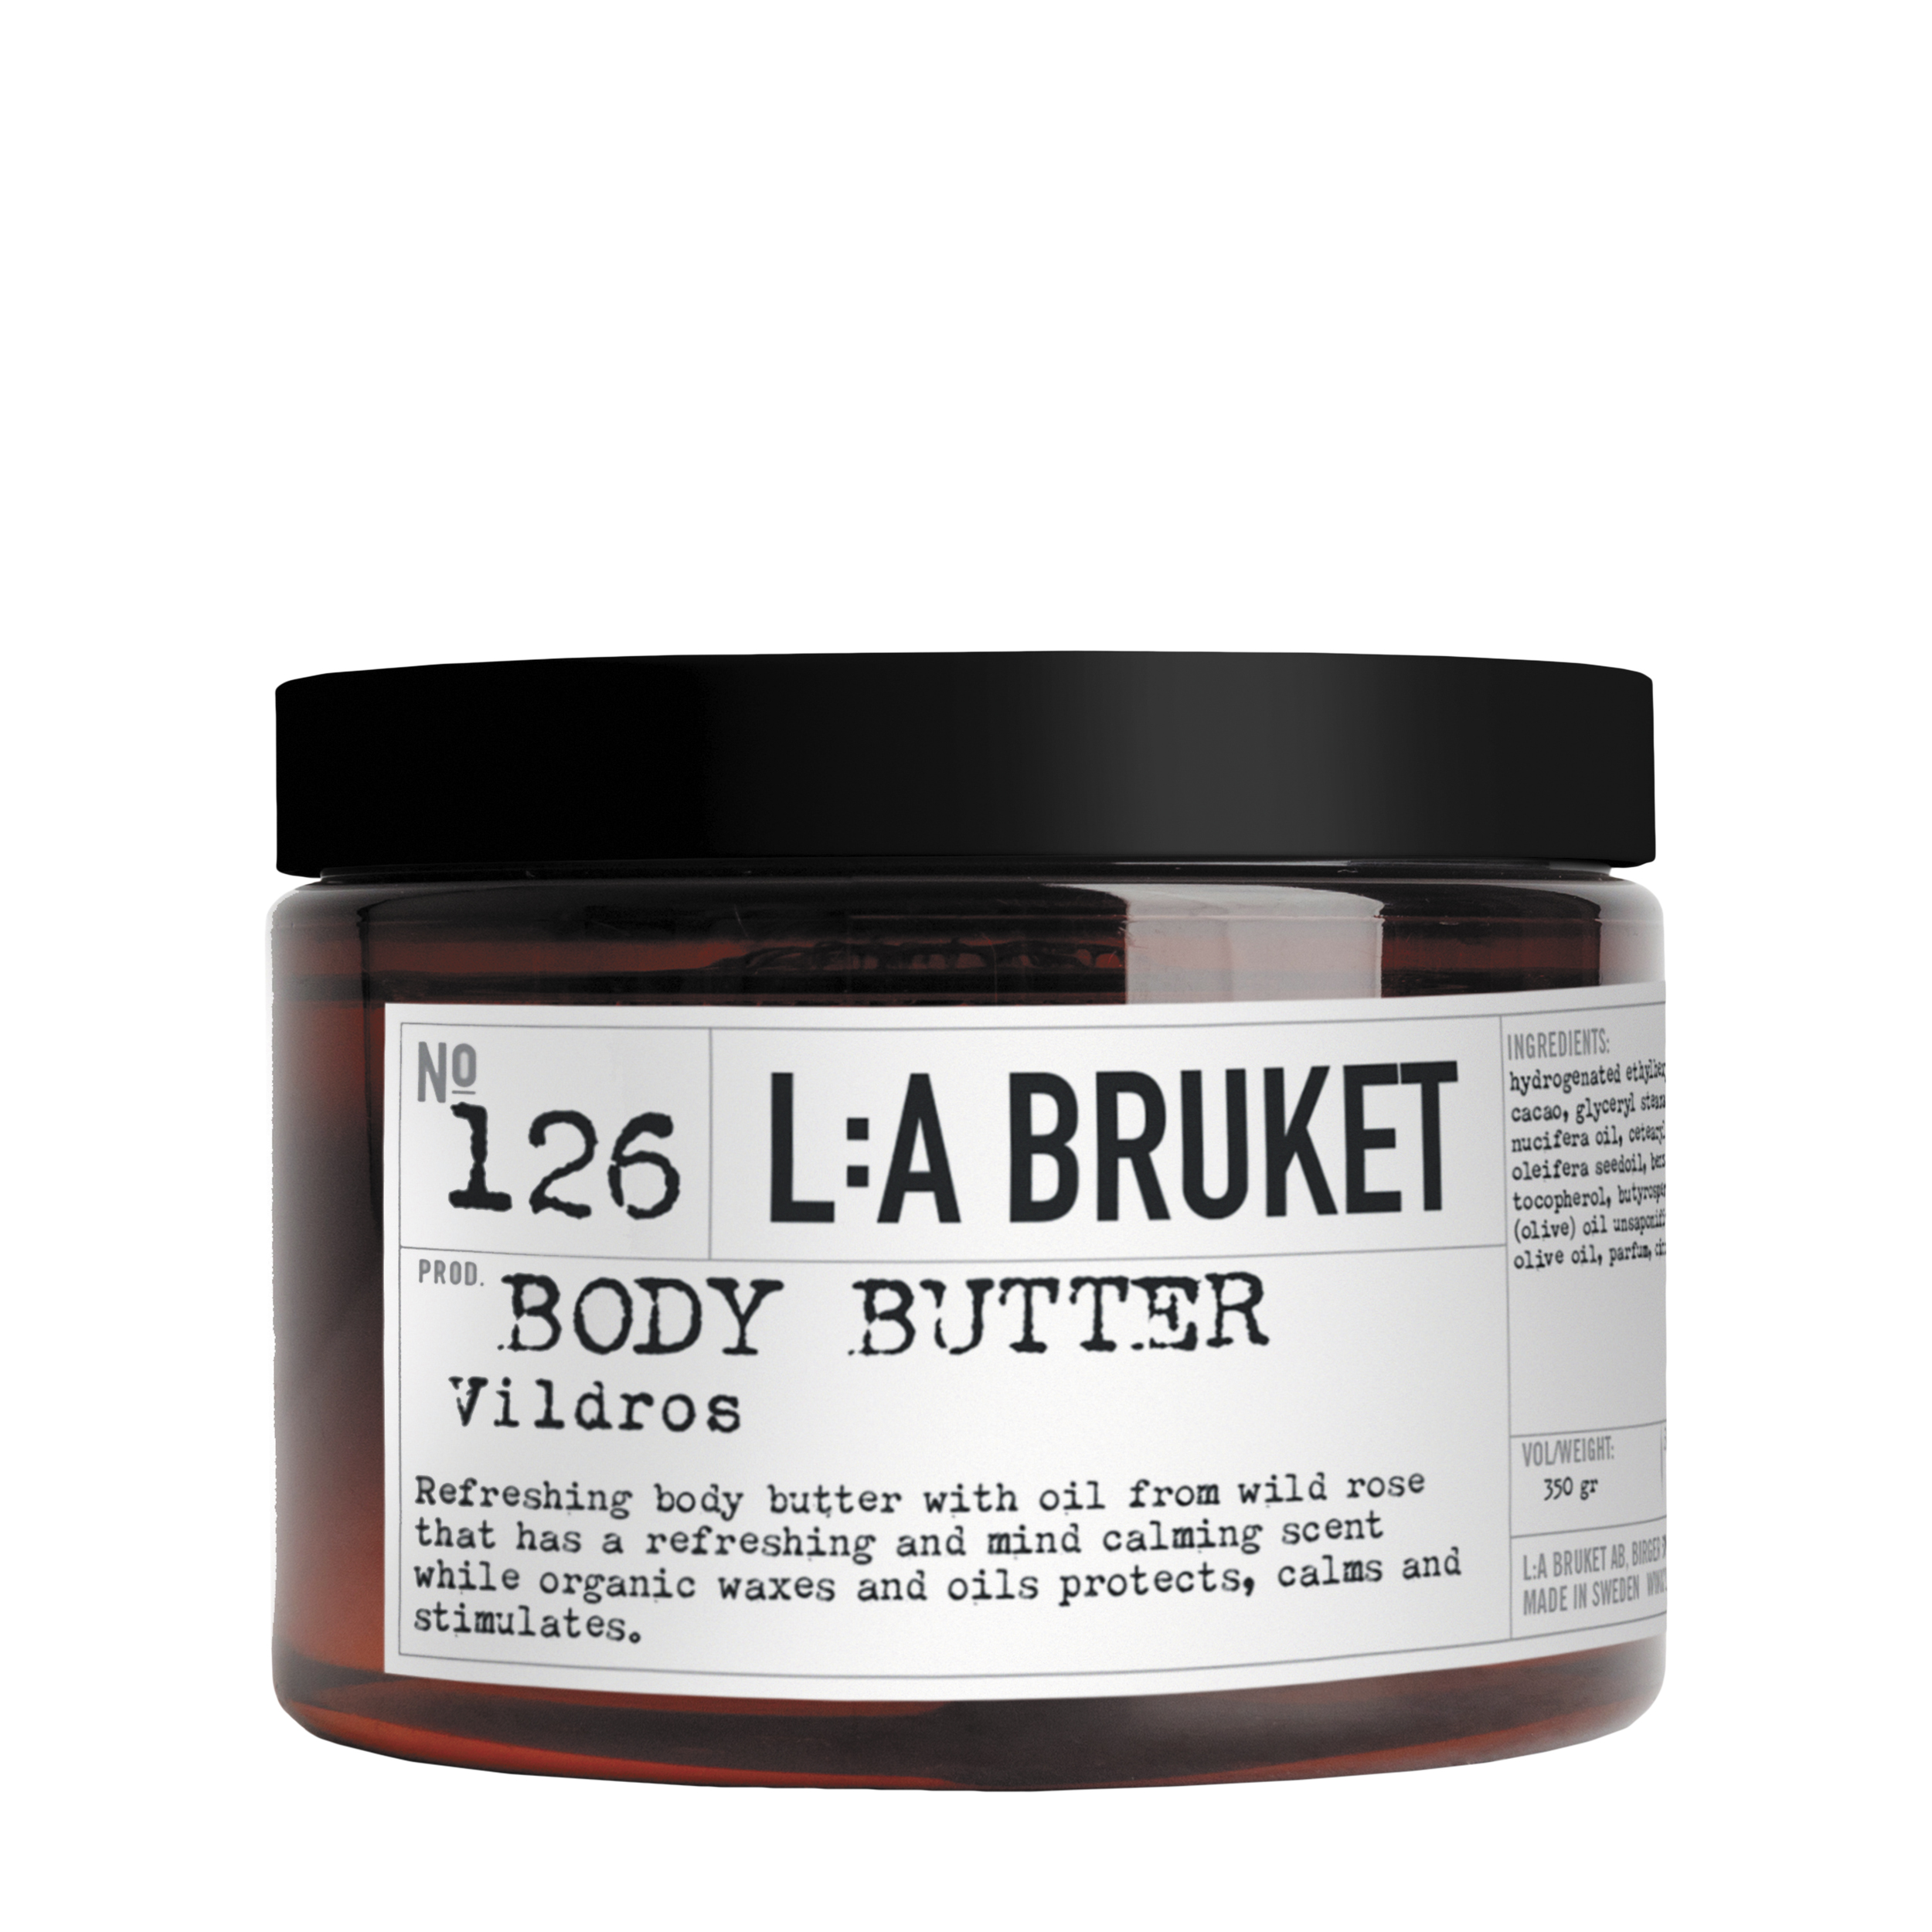 L:A BRUKET L:A BRUKET Укрепляющее и восстанавливающее крем-масло для тела с дикой розой 126 350 гр